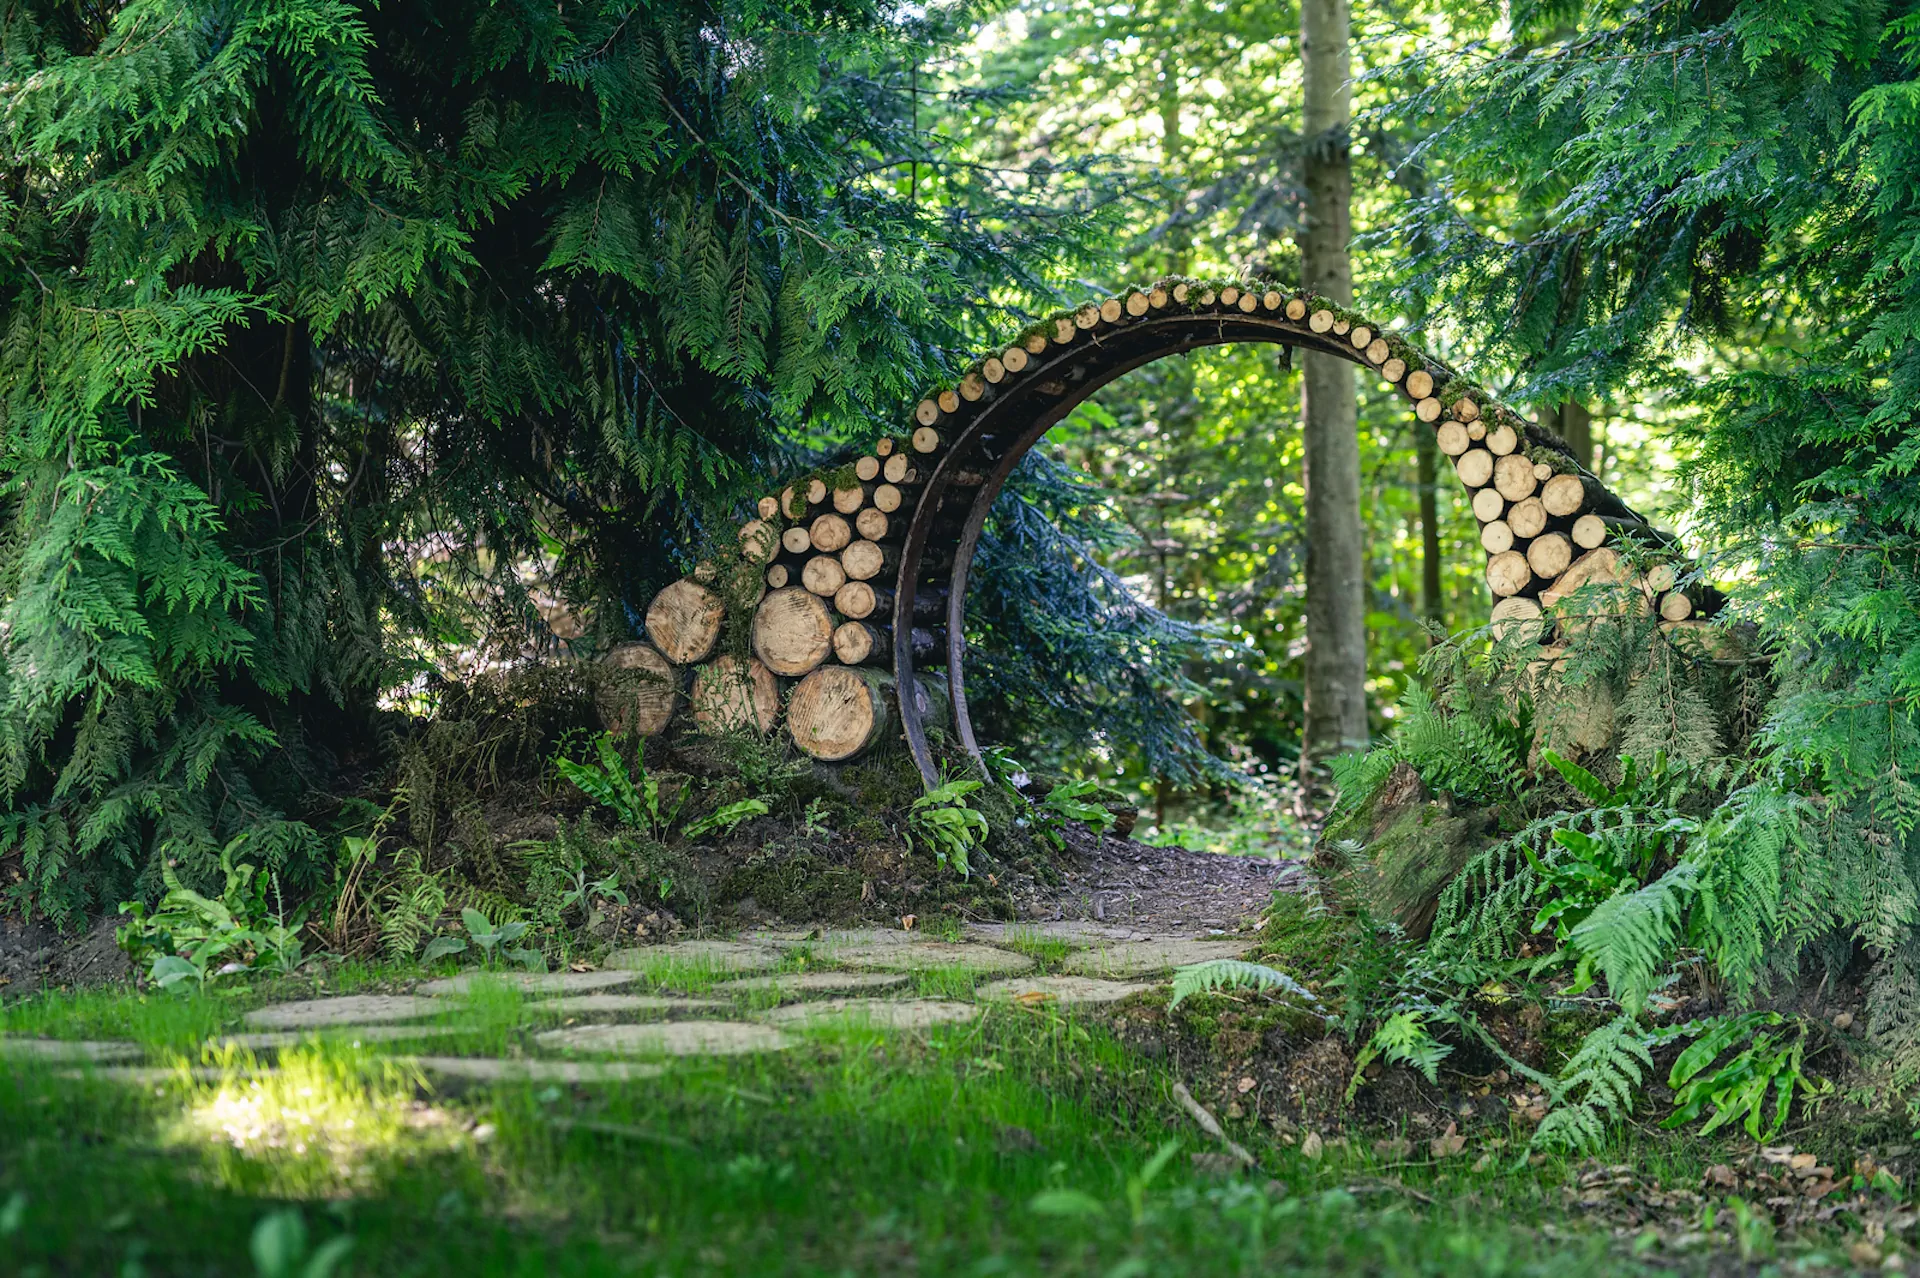 Une arche incurvée faite de rondins empilés se dresse dans une zone boisée au feuillage vert luxuriant et à la lumière du soleil.